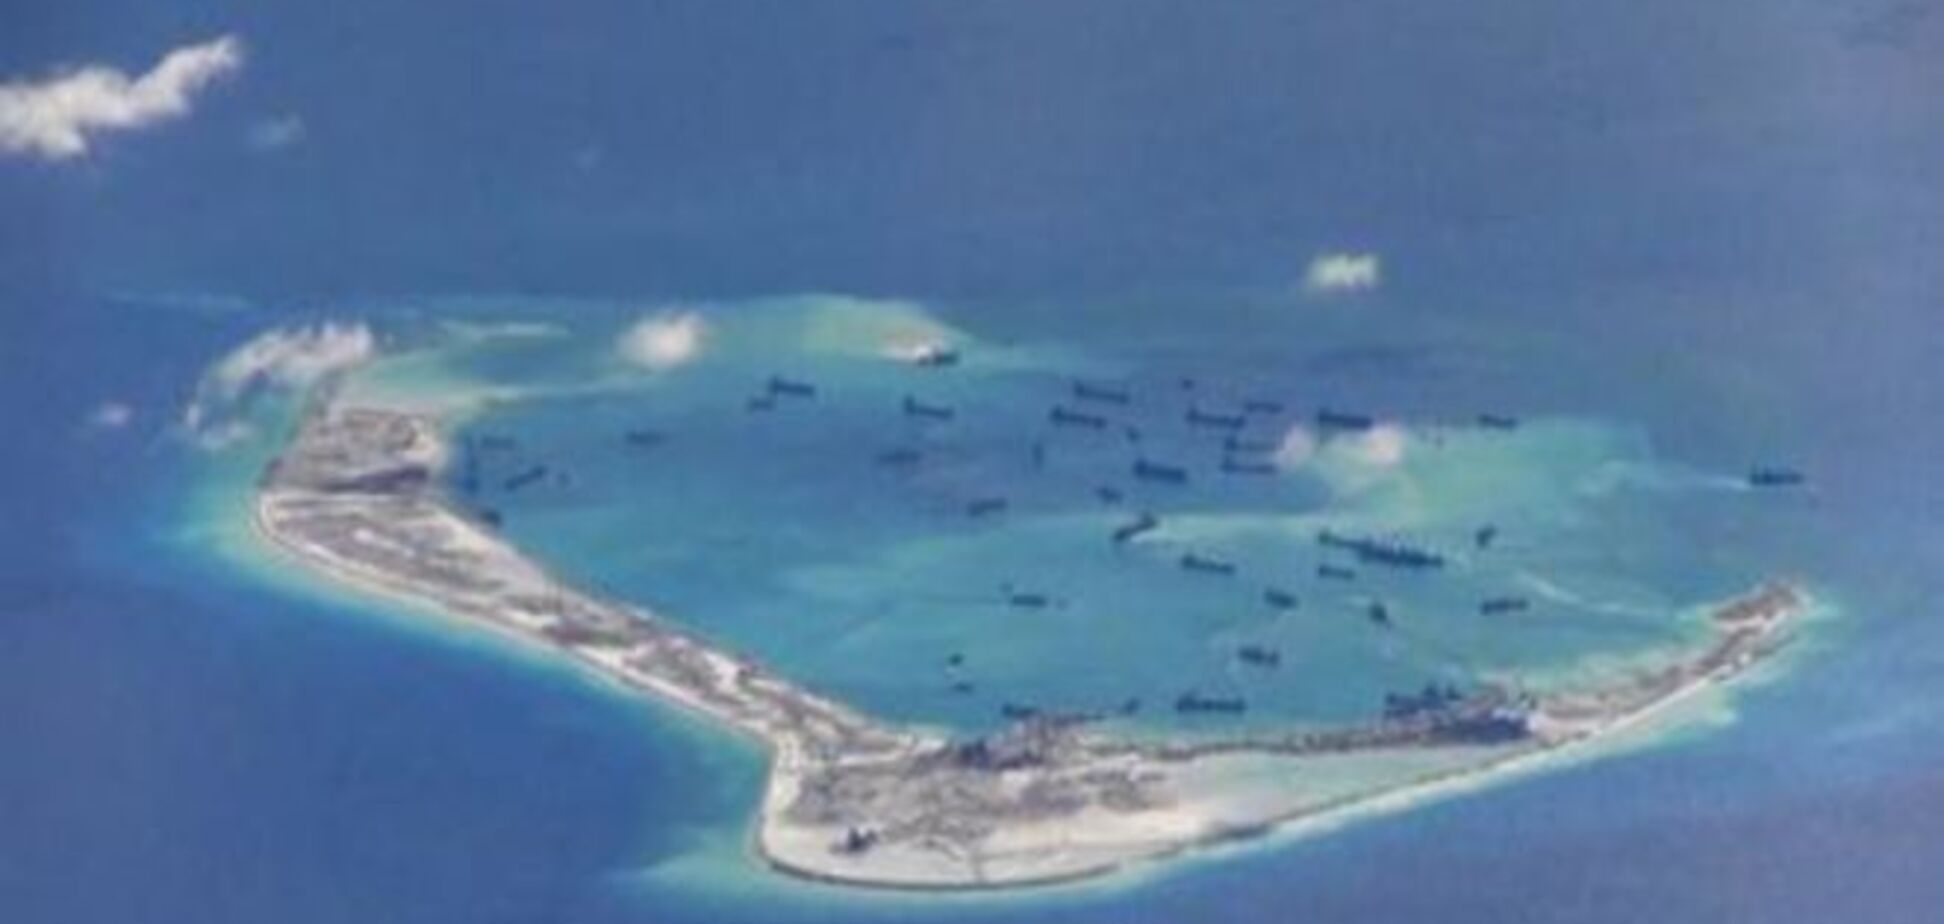 Южно-Китайское море: борьба за сферы влияния